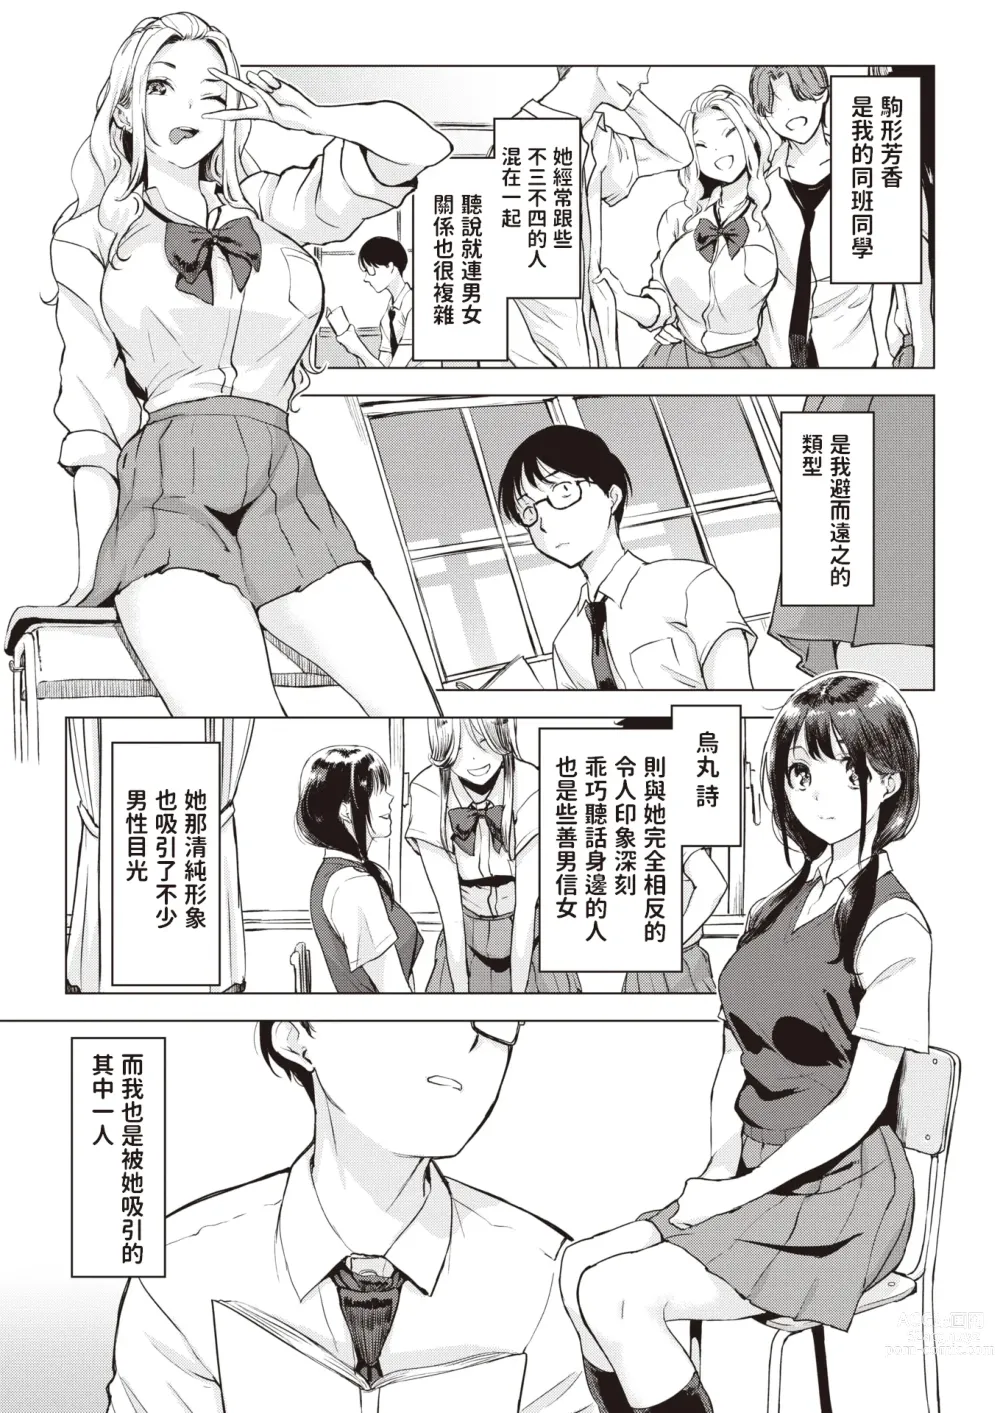 Page 3 of manga Coin Laundry e Ikou!